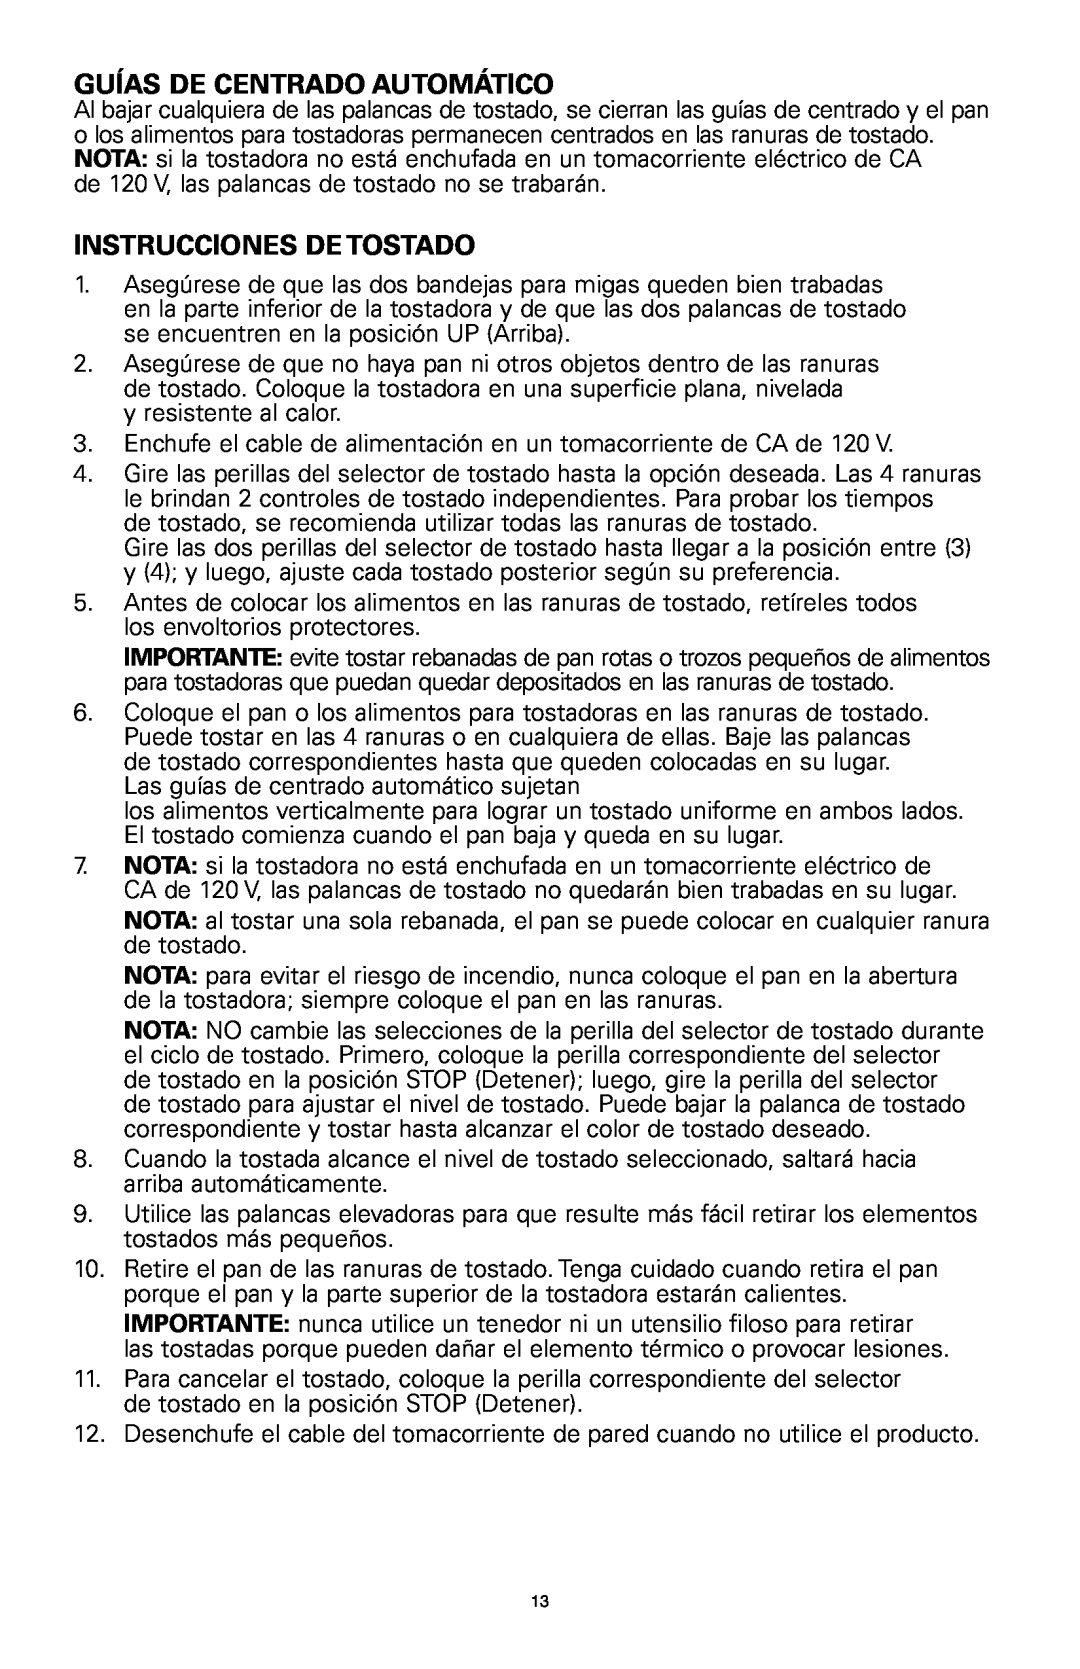 Rival 16042 manual Guías De Centrado Automático, Instrucciones De Tostado 